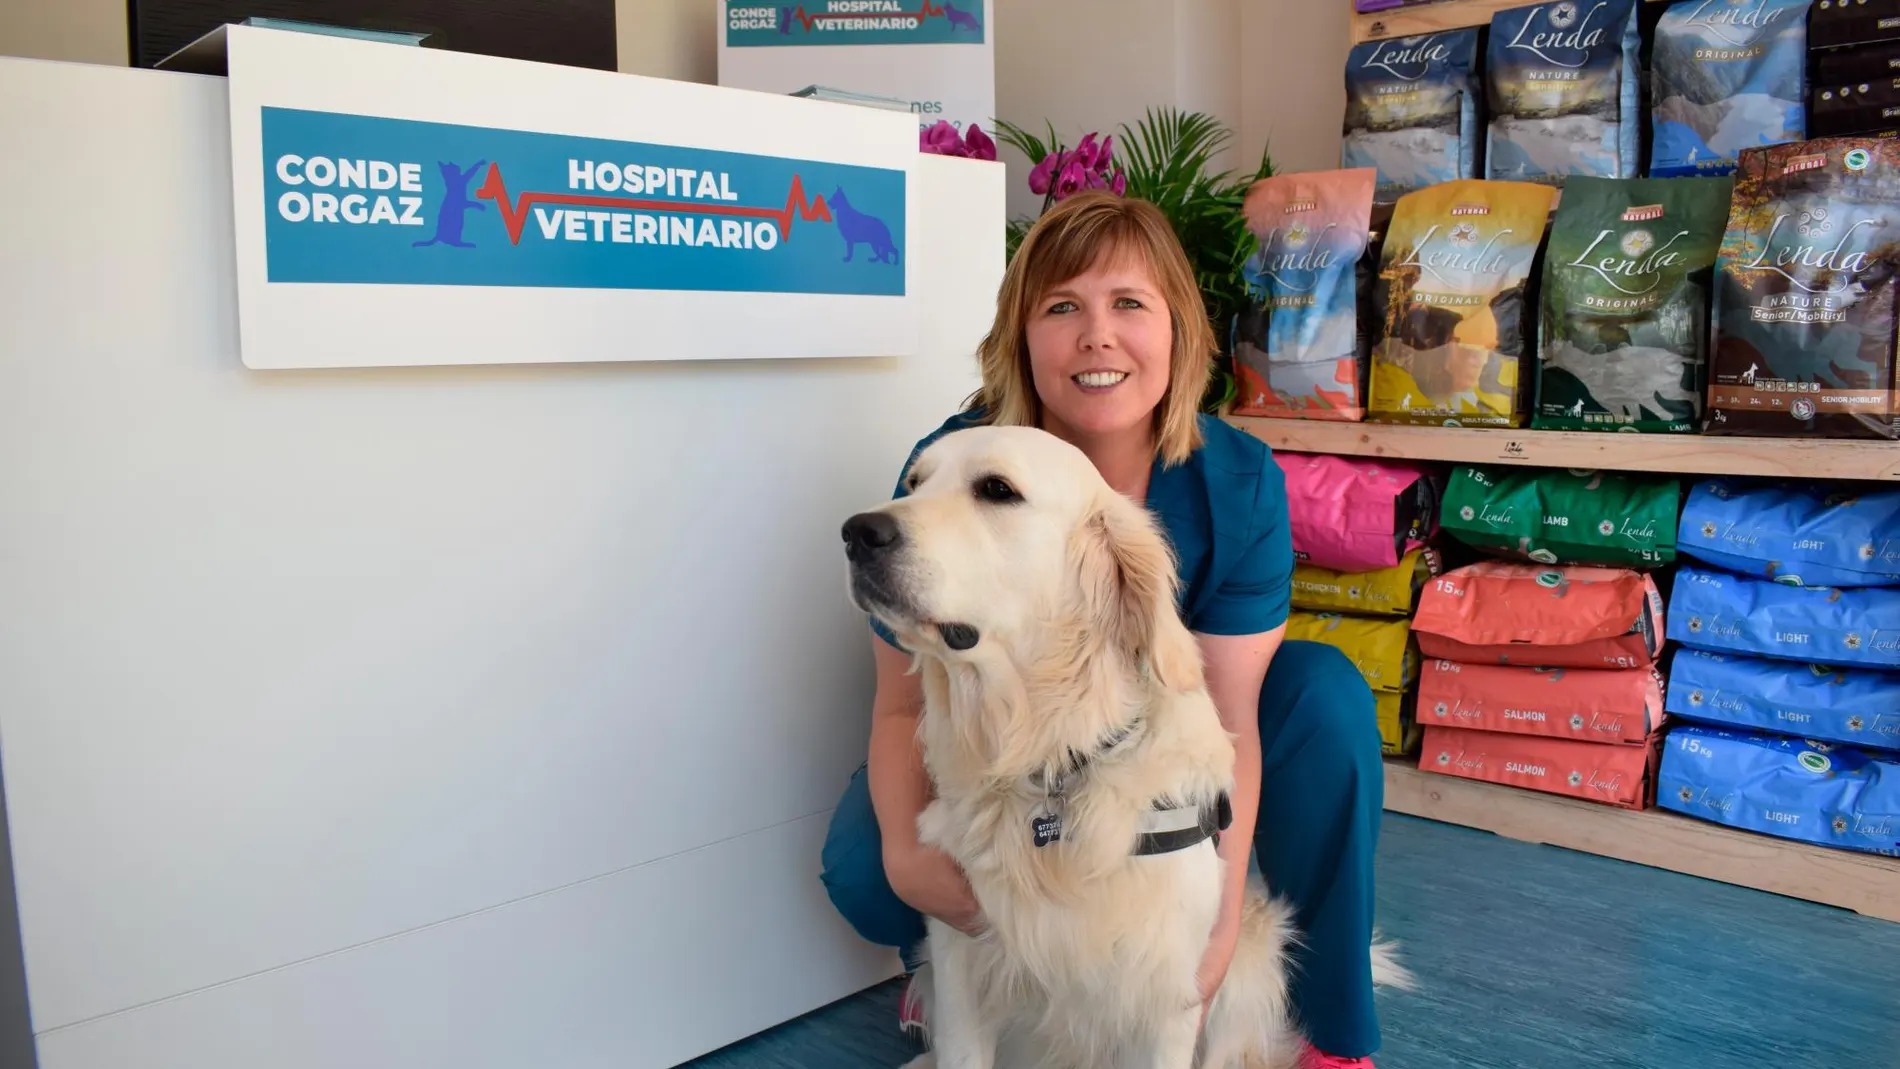 Irene Alfonso es veterinaria del Hospital Veterinario Conde Orgaz de Madrid